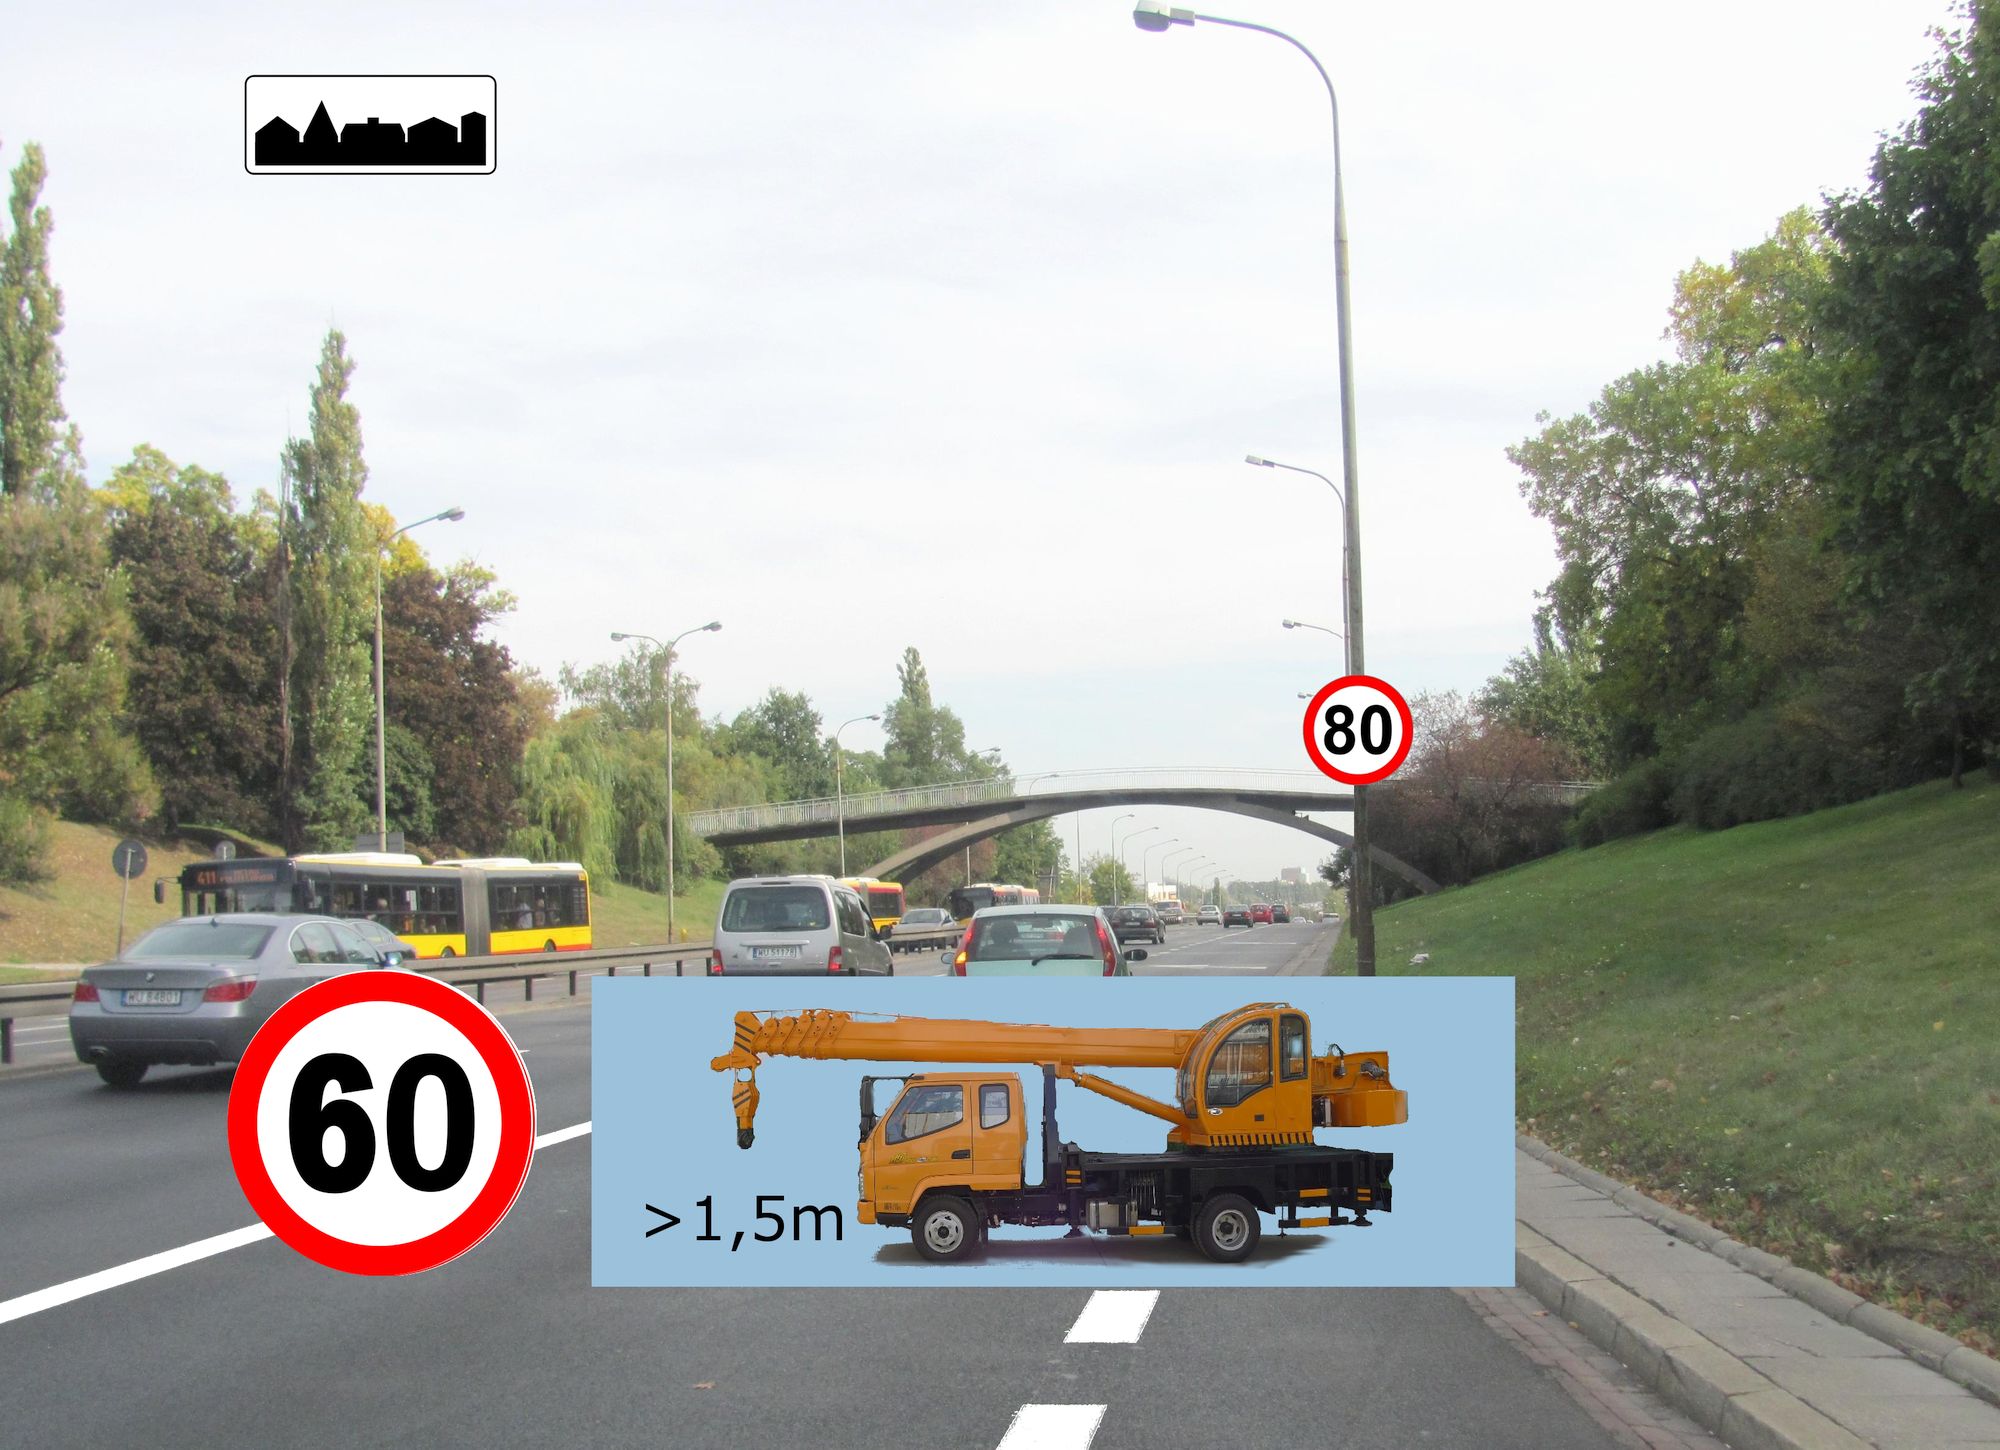 Czy znak podwyższający prędkość w obszarze zabudowanym dotyczy wszystkich uczestników ruchu drogowego, czy może część pojazdów jest z tego przepisu zezwalającego na poruszanie się z wyższą prędkością wyłączona?